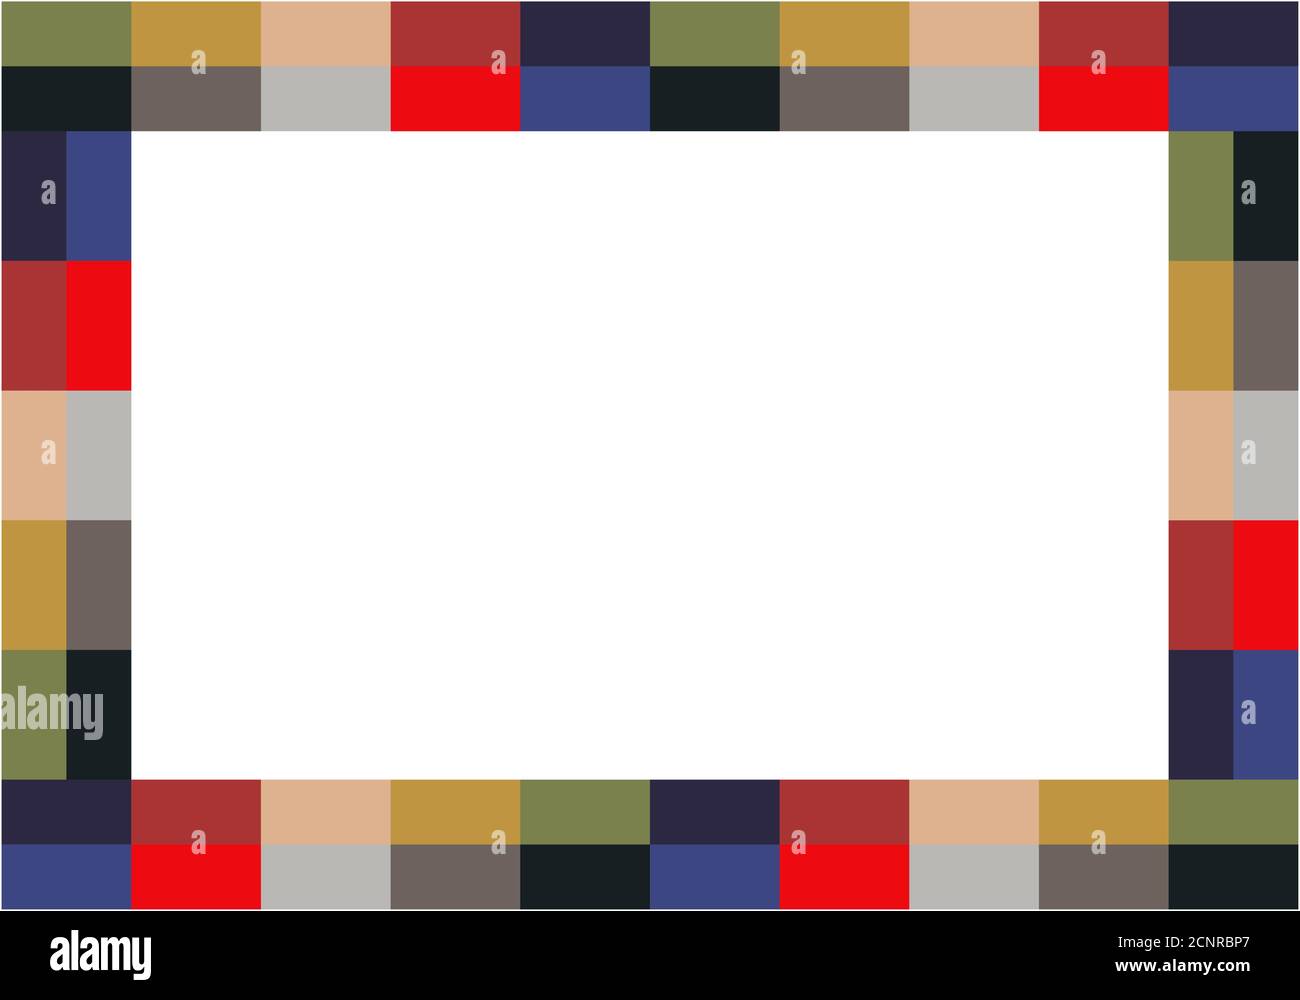 Pixel Mosaik Rechteck Rahmen. Vektorgrafik. Isoliert auf weißem Hintergrund. Hintergrund Formular Inserent. Vorlage für Bordüre, Innenarchitektur. Stock Vektor